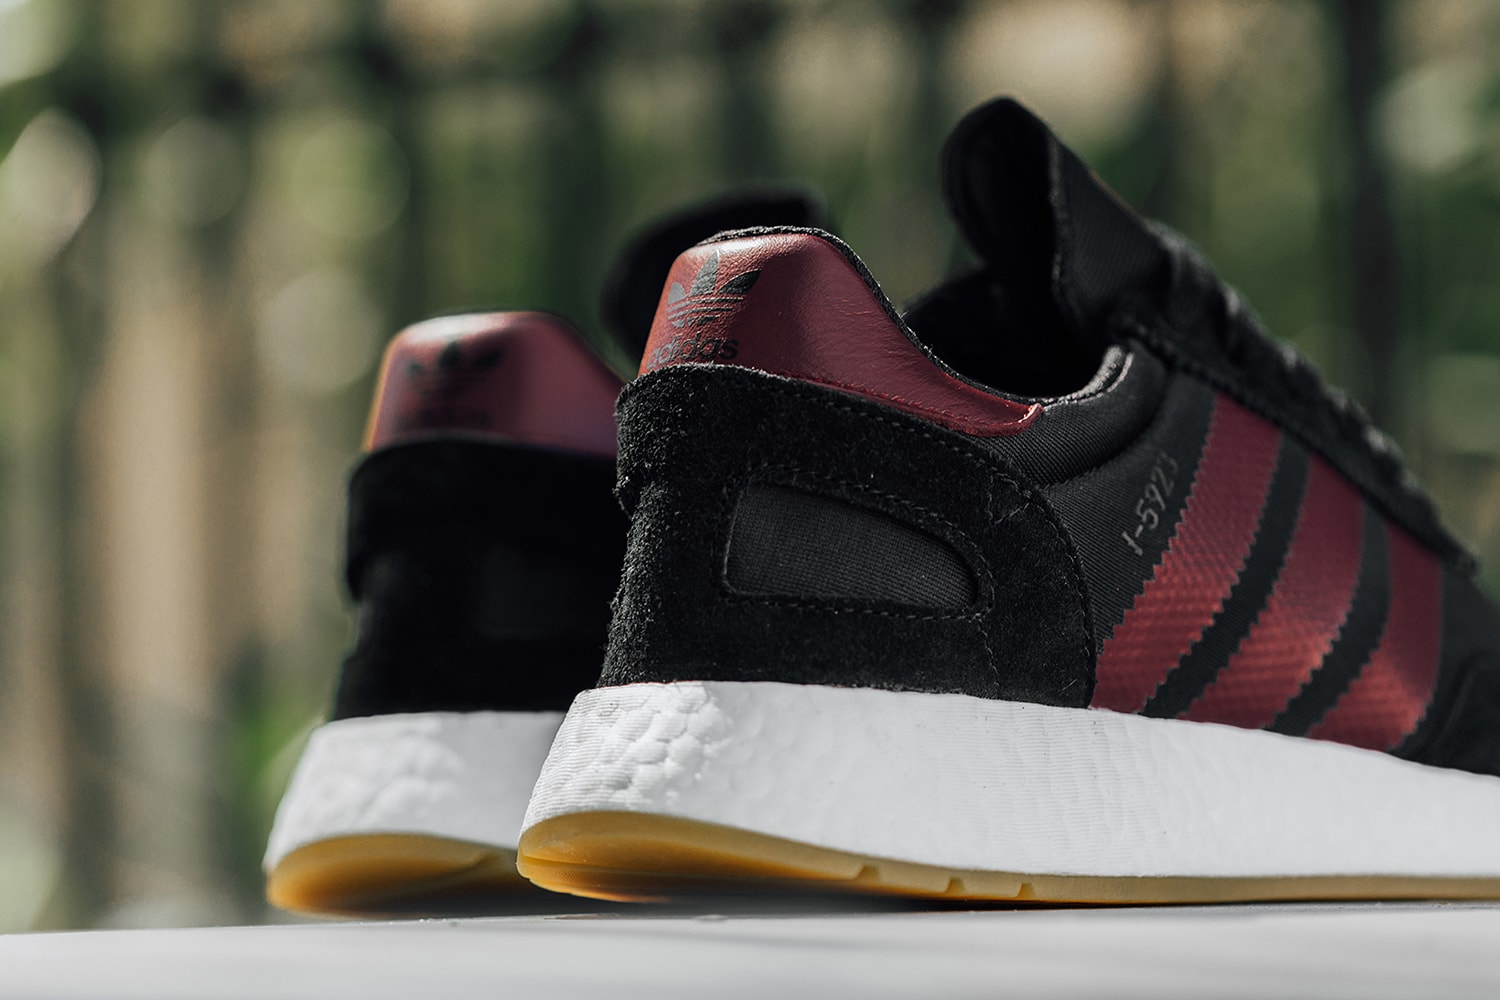 adidas I-5923 Black Collegiate Burgundy release info sneakers footwear iniki runner